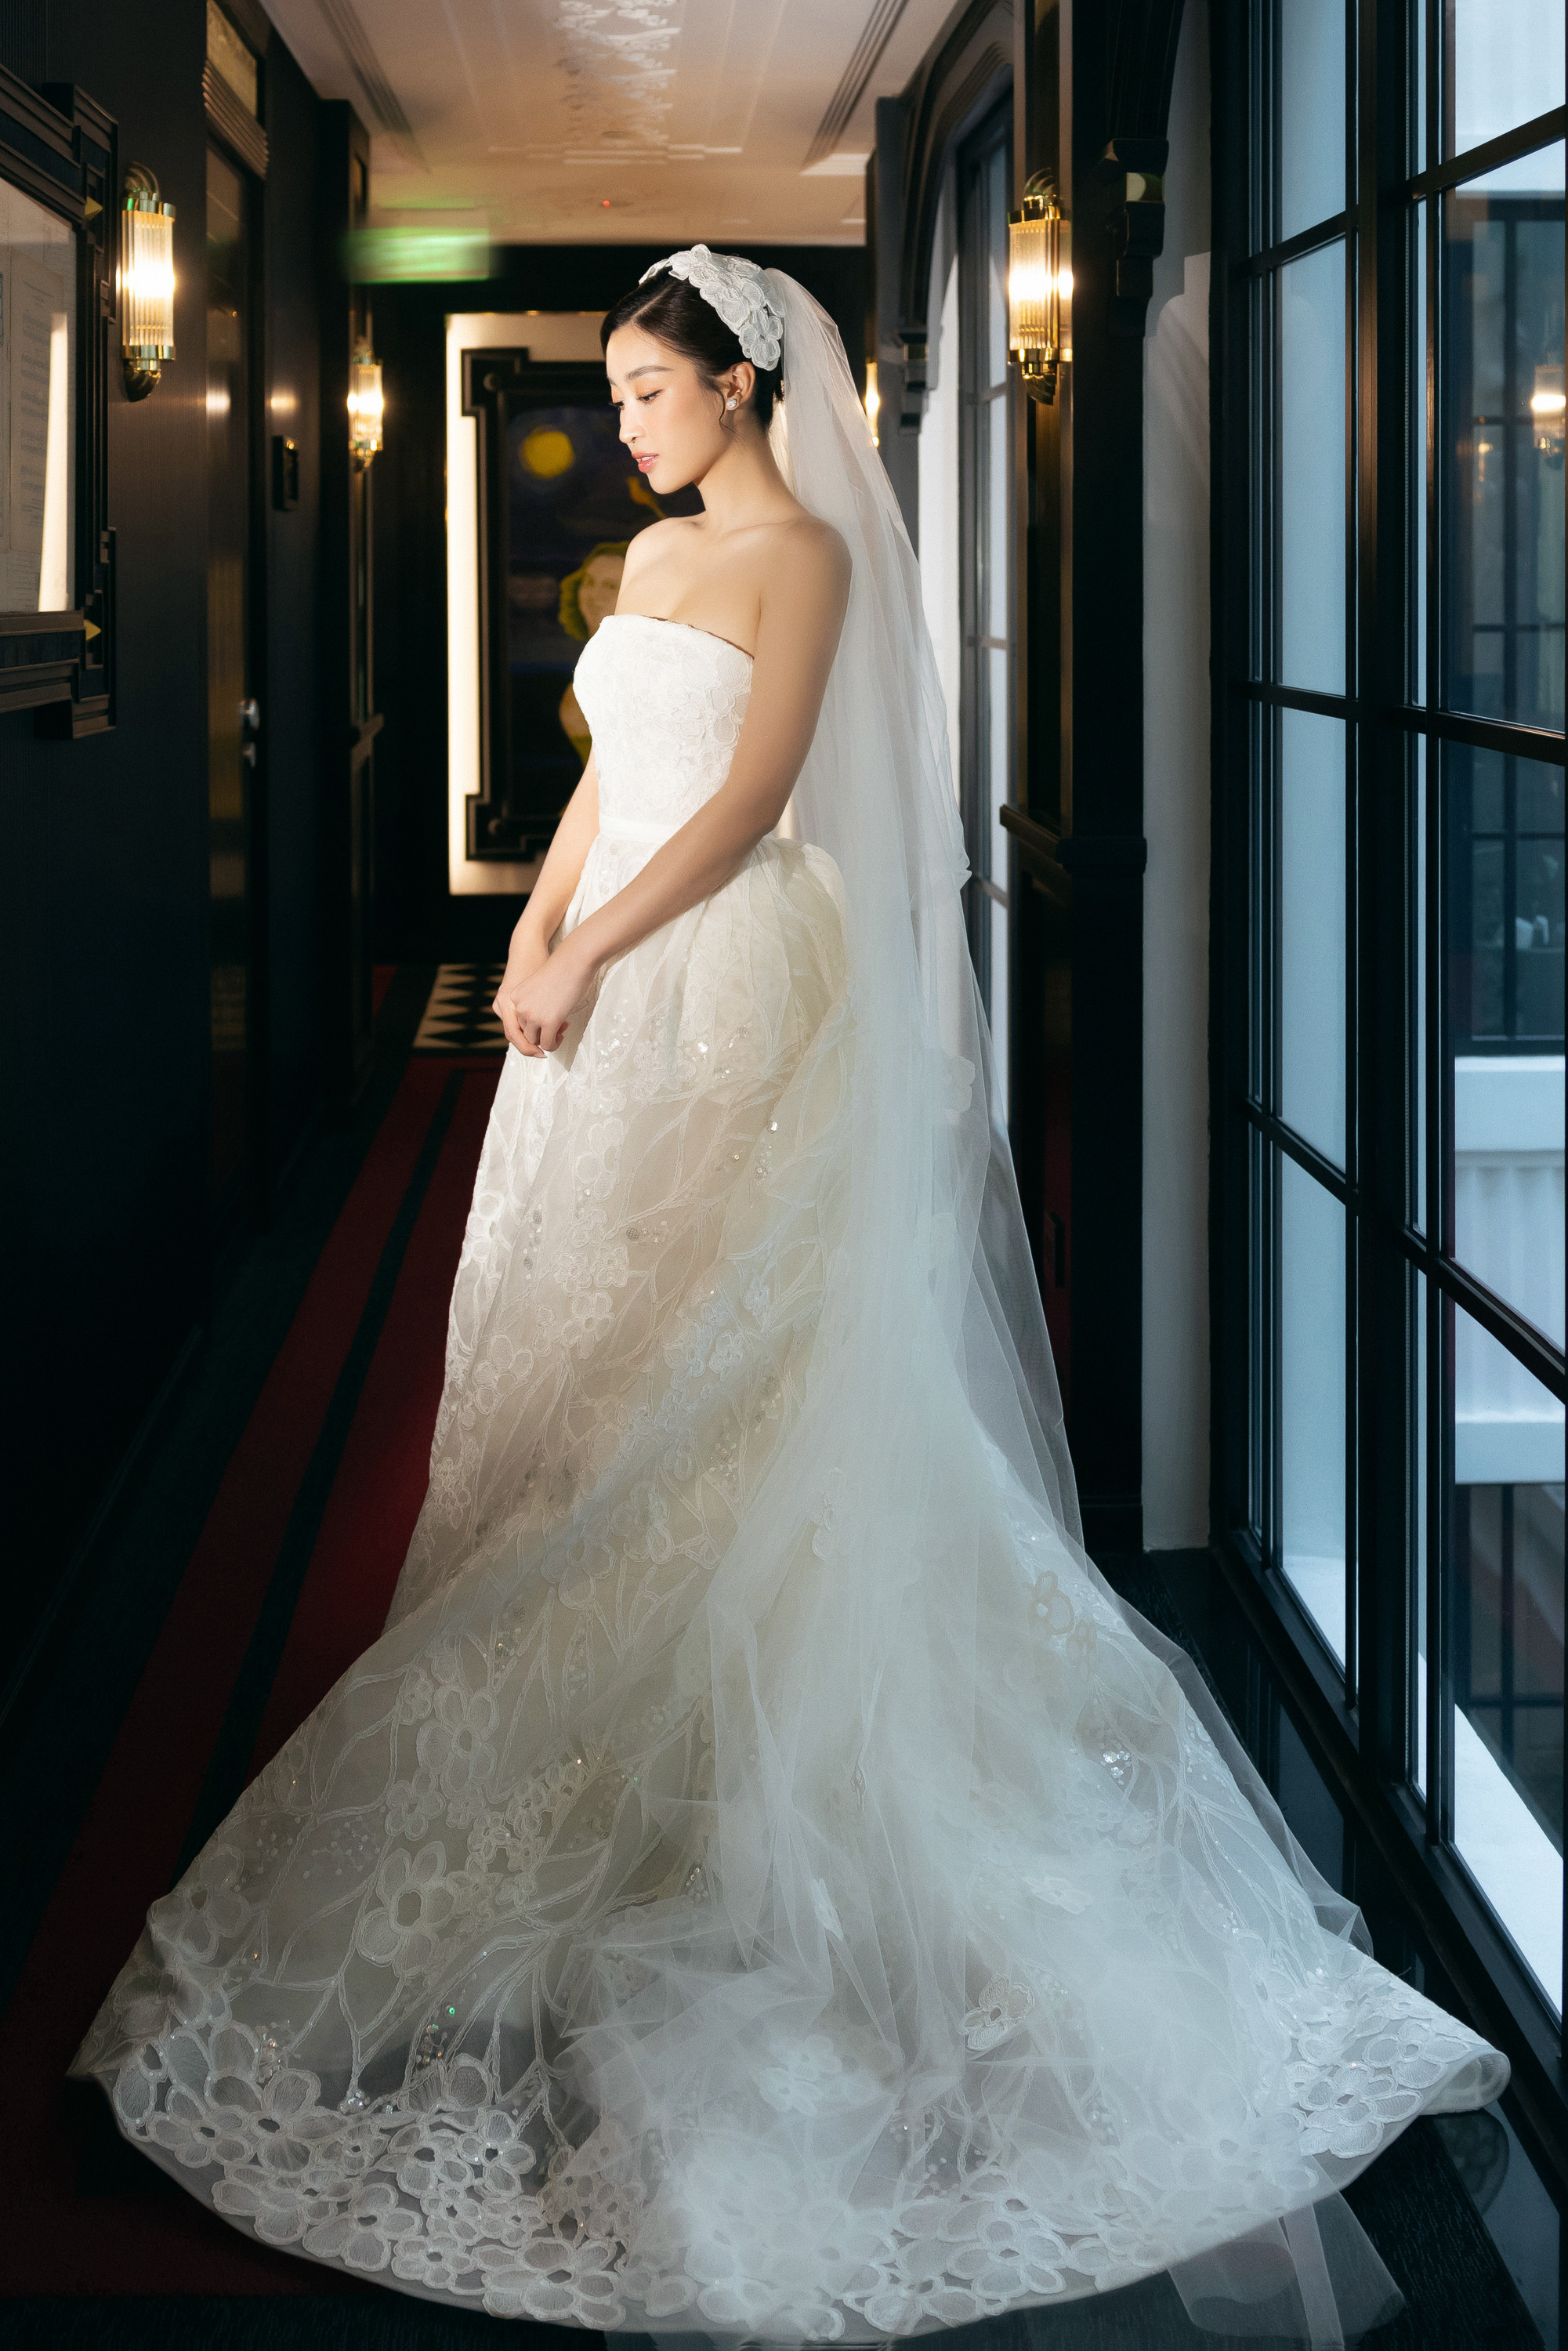 Hoa hậu Đỗ Mỹ Linh 2 lần khóc trong lễ cưới với thiếu gia Vinh Quang-2